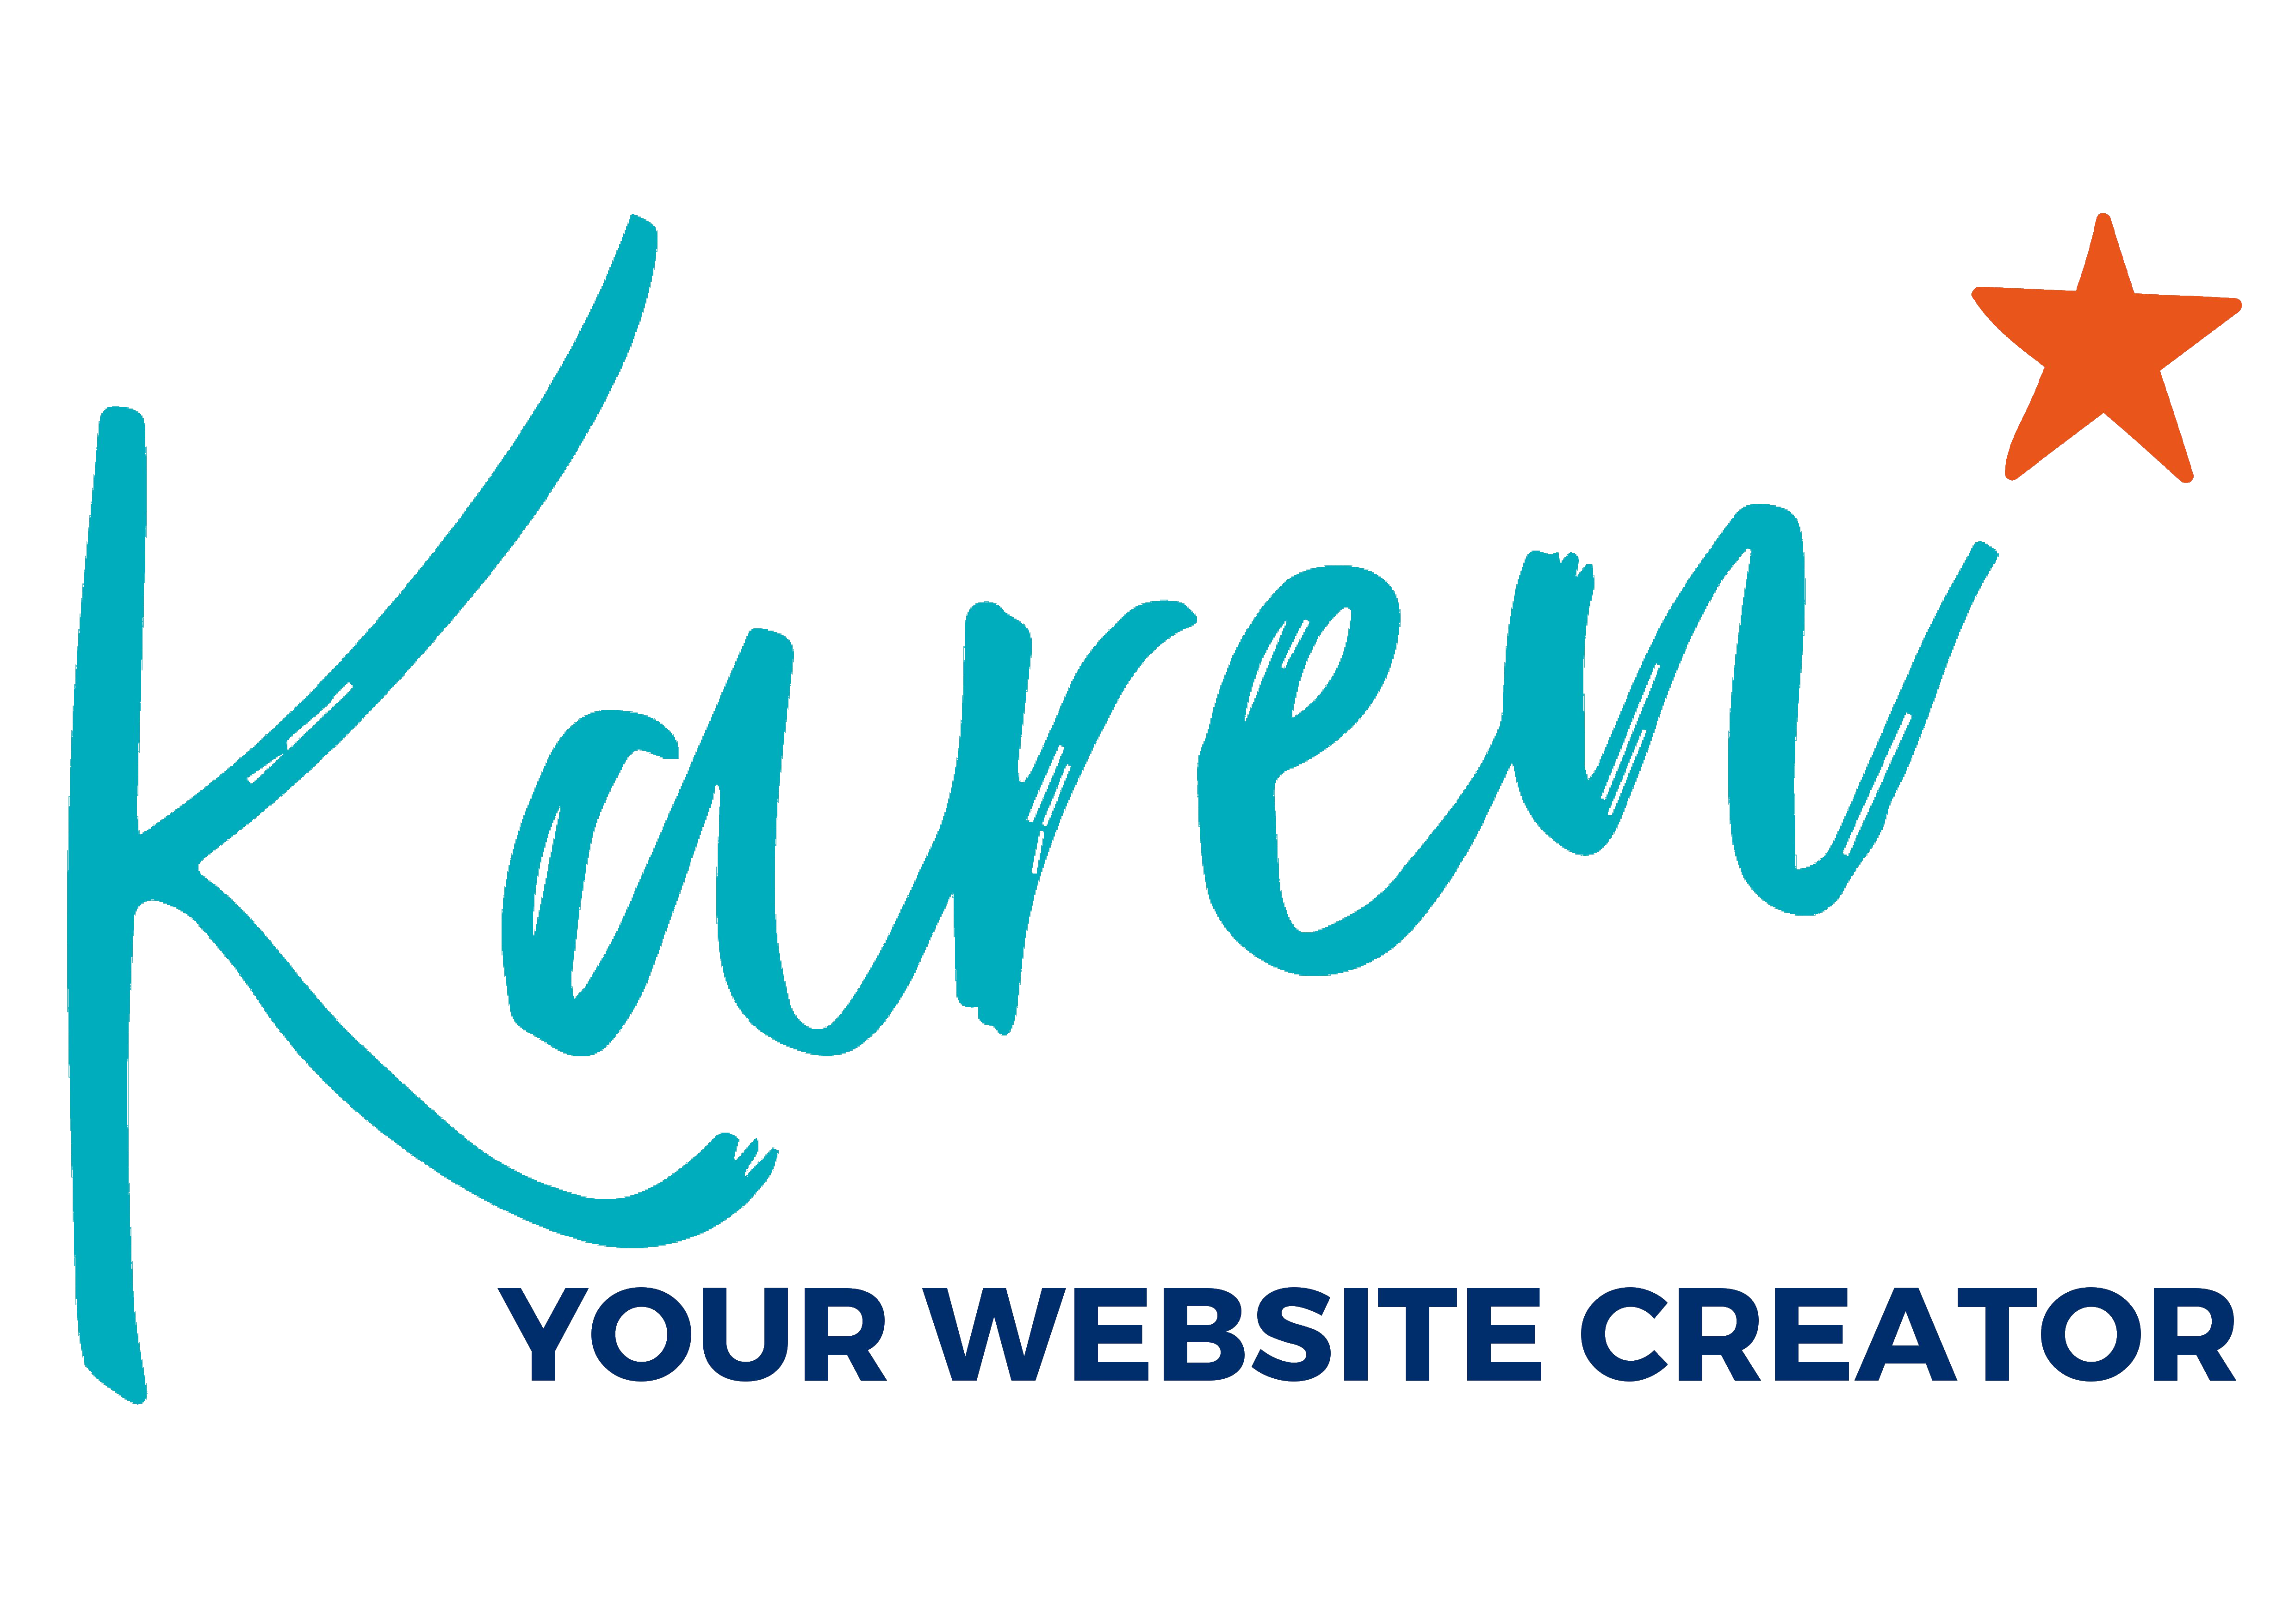 karenyourwebsitecreator.com